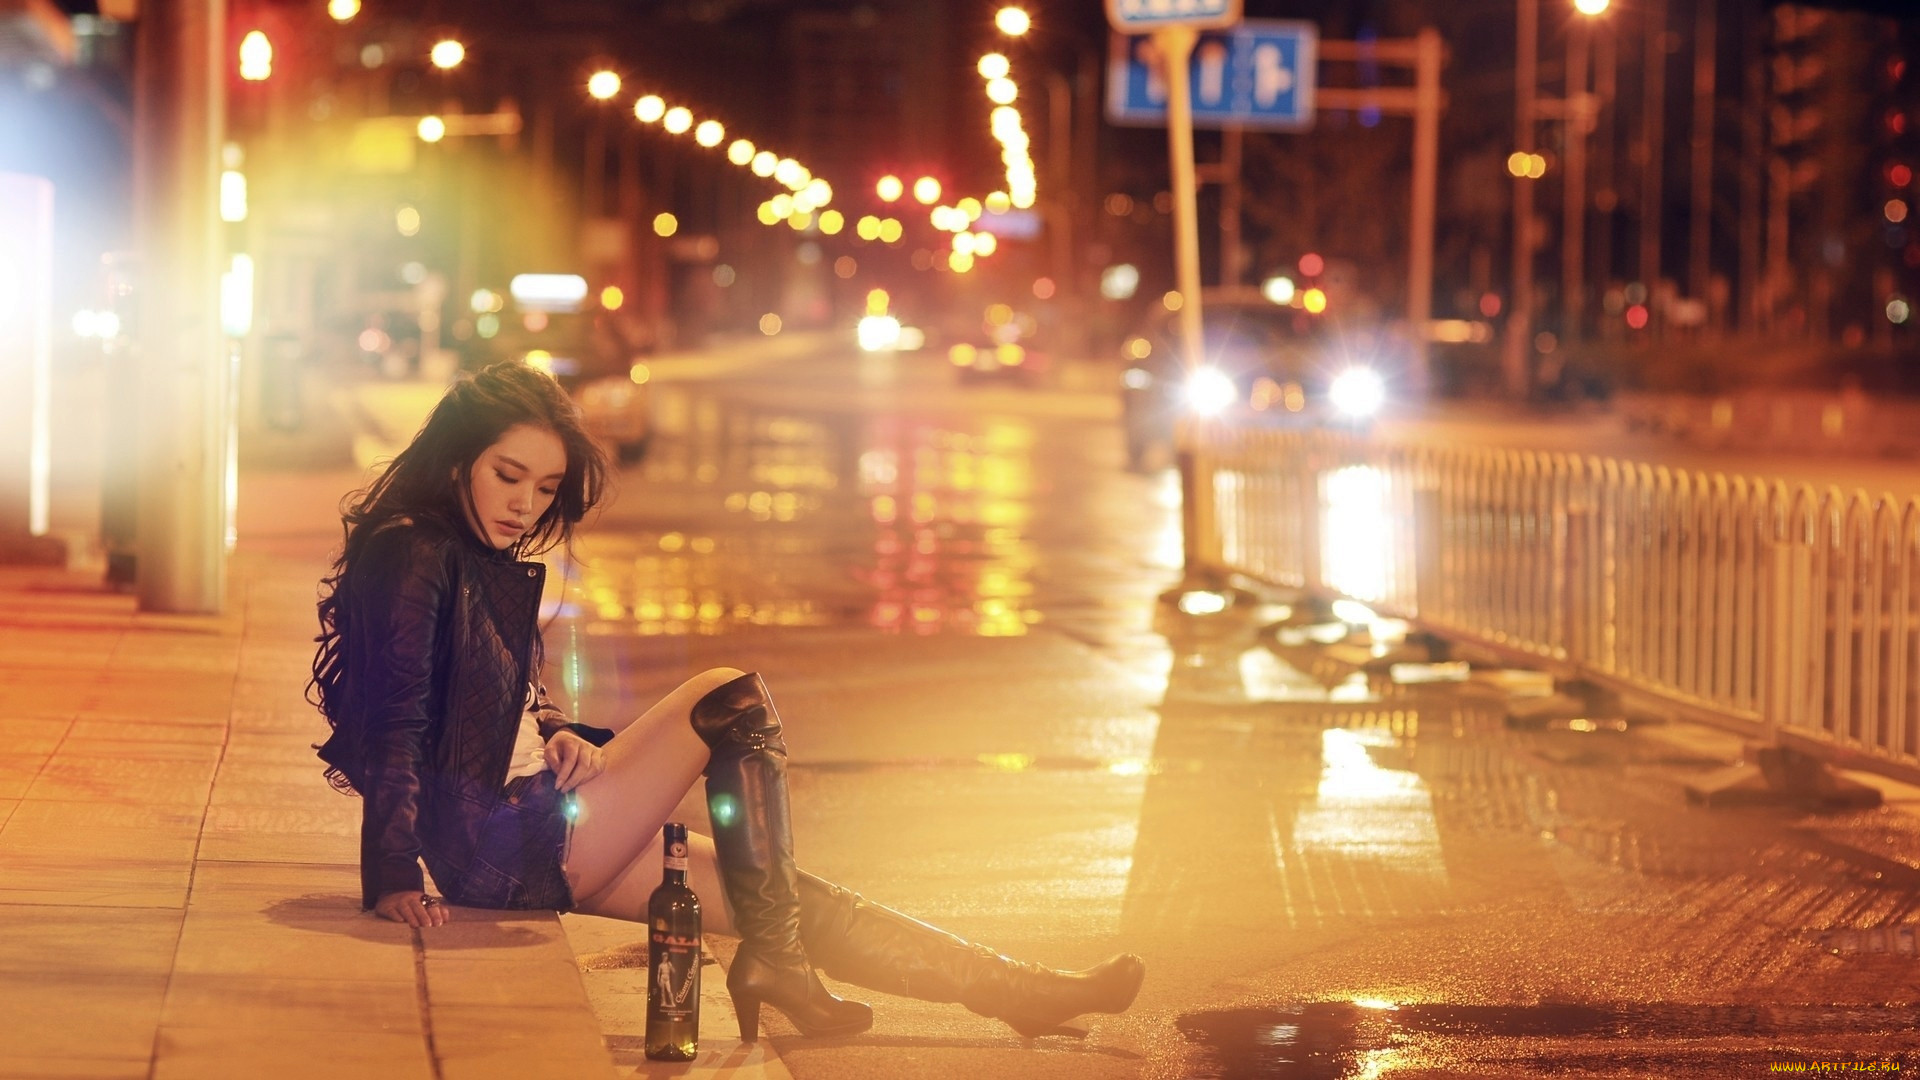 Слово гуляем красиво. Девушка ночью в городе. Ночная фотосессия в городе. Девушка под дождем в городе. Девушка и ночной город.